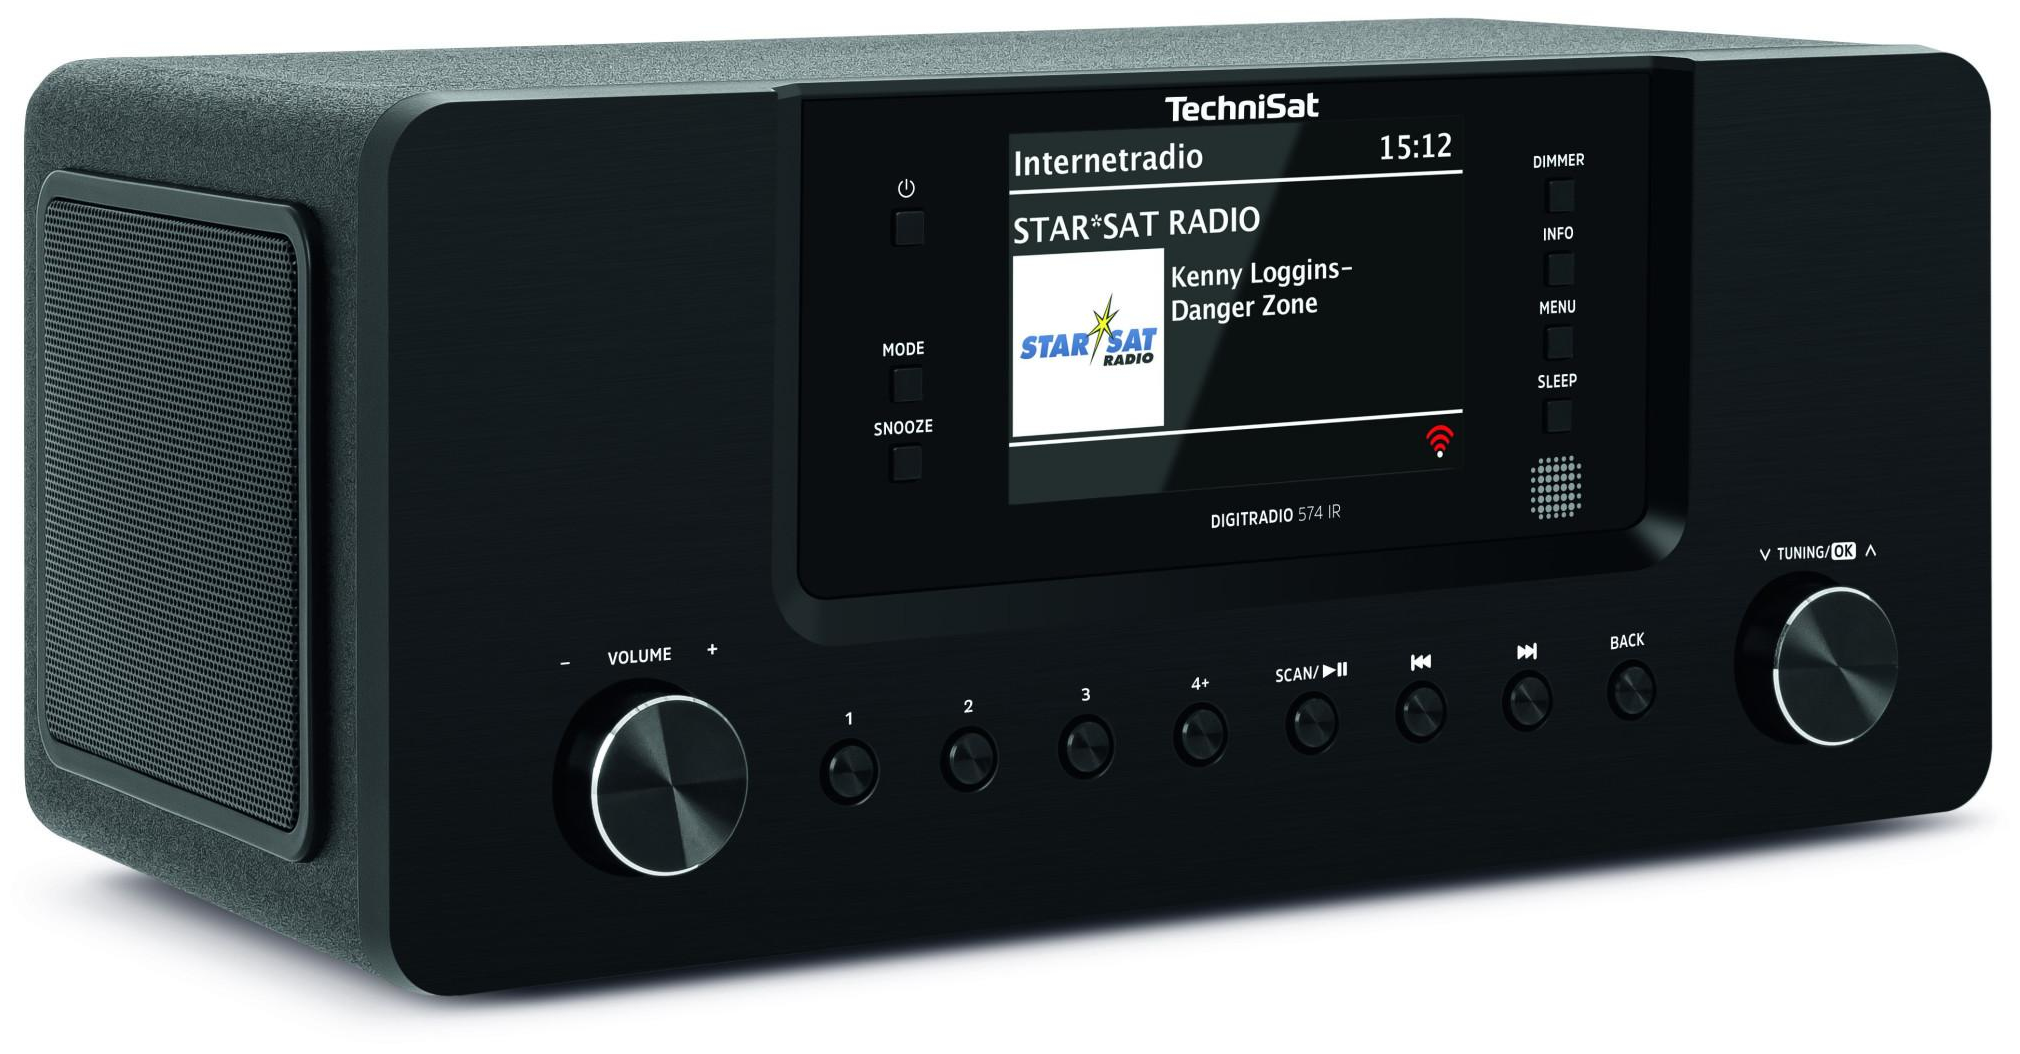 TechniSat DigitRadio 574 Bluetooth (Schwarz) Radio Tragbar expert von IR DAB+, Technomarkt FM